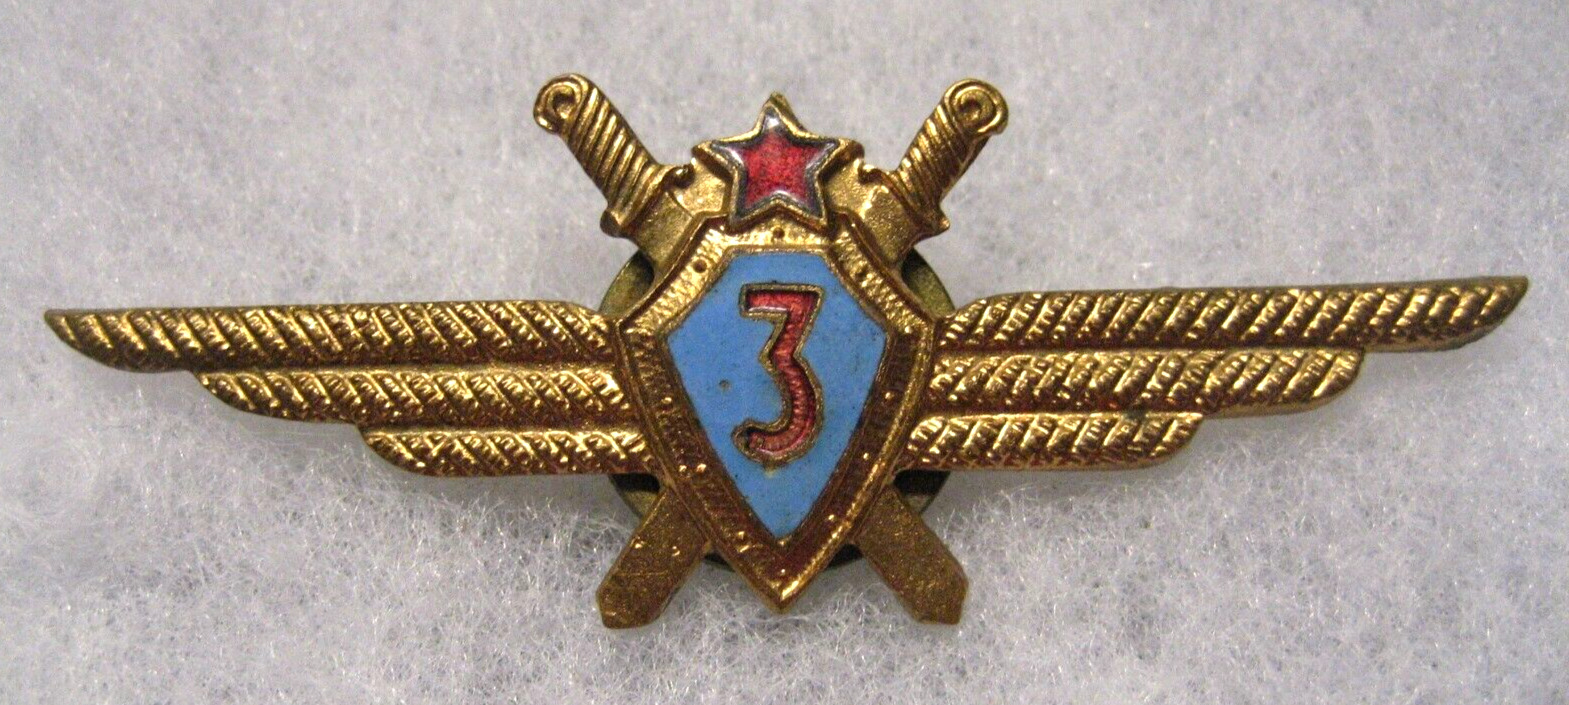 Bulgaria Air Force 3rd Pilot Wings badge, 1950-60s